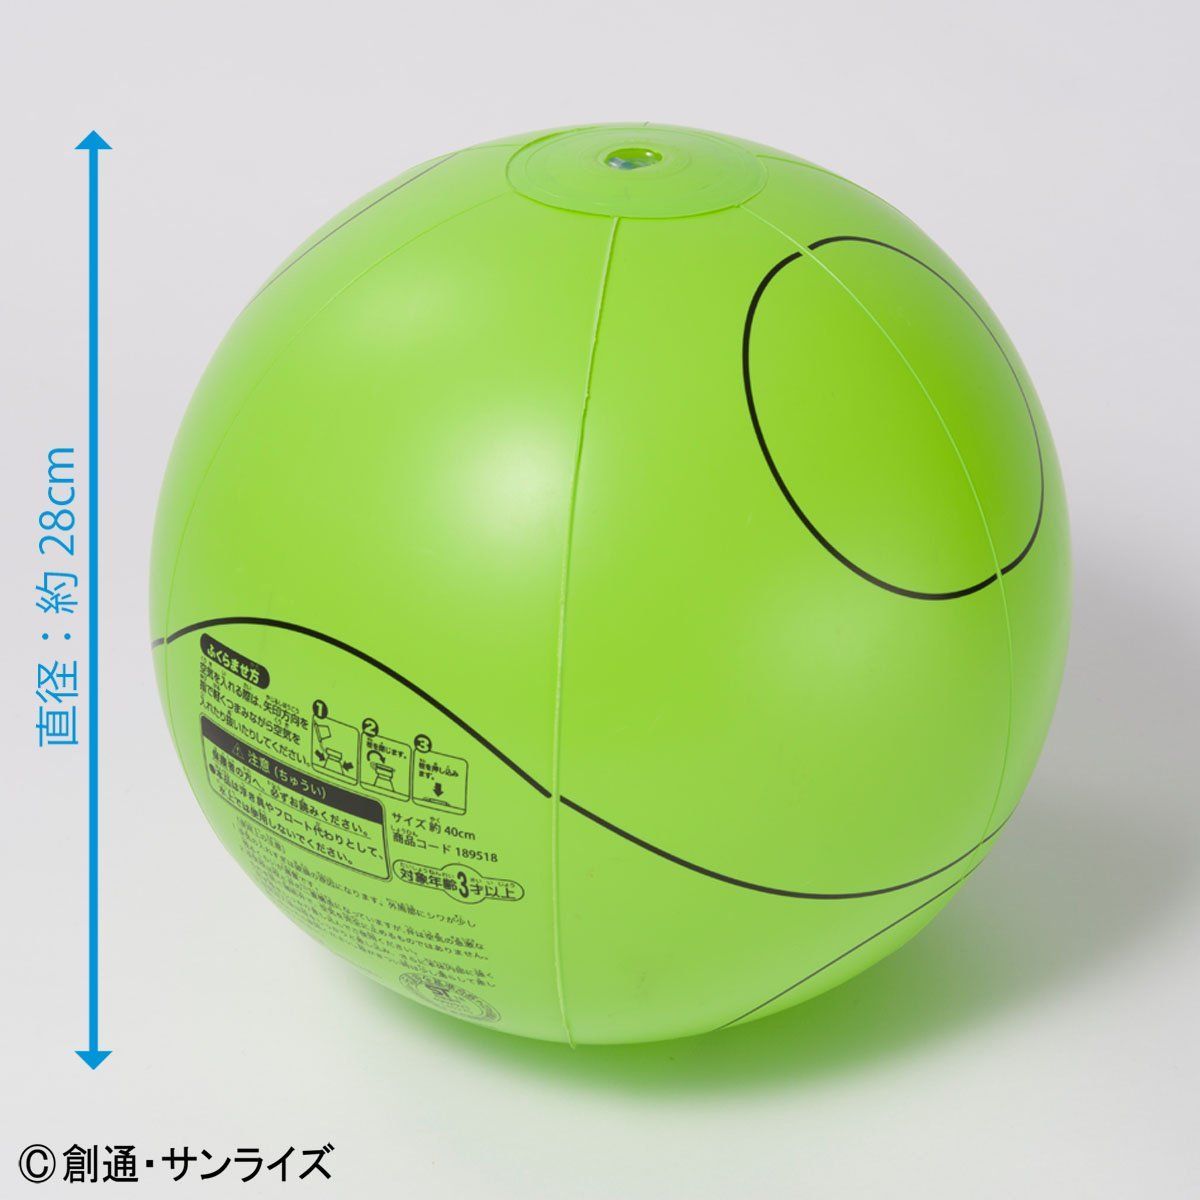 ハロ ビーチボール グリーン ピンク Sサイズ 28cm 再販 ガンダムシリーズ 趣味 コレクション プレミアムバンダイ公式通販